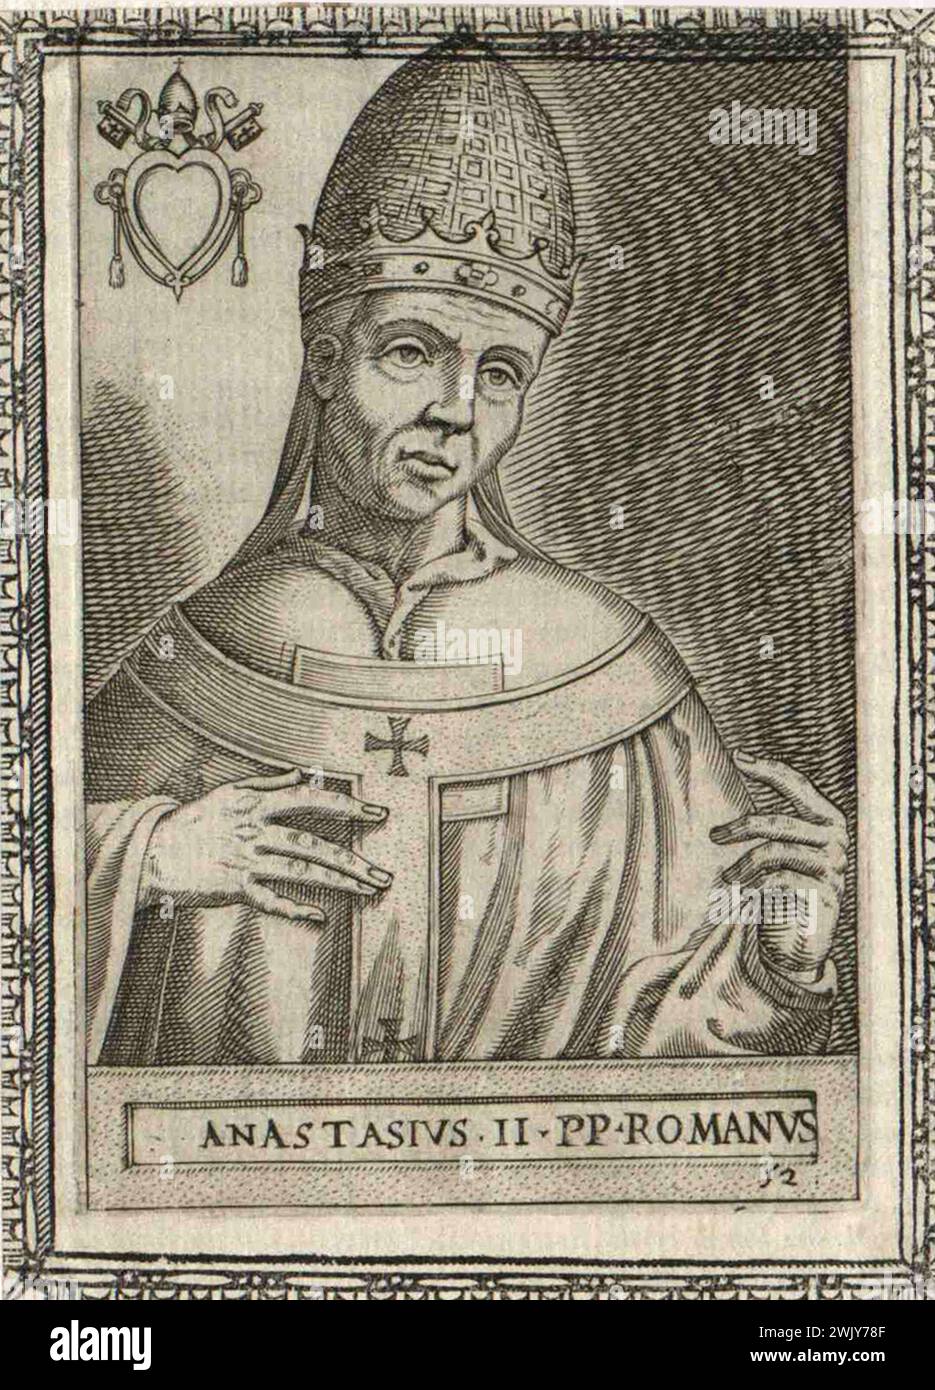 Gravure du XVIe siècle du pape Anastase II qui fut pontife de AD496 à AD498. Il était le 50e pape. Banque D'Images